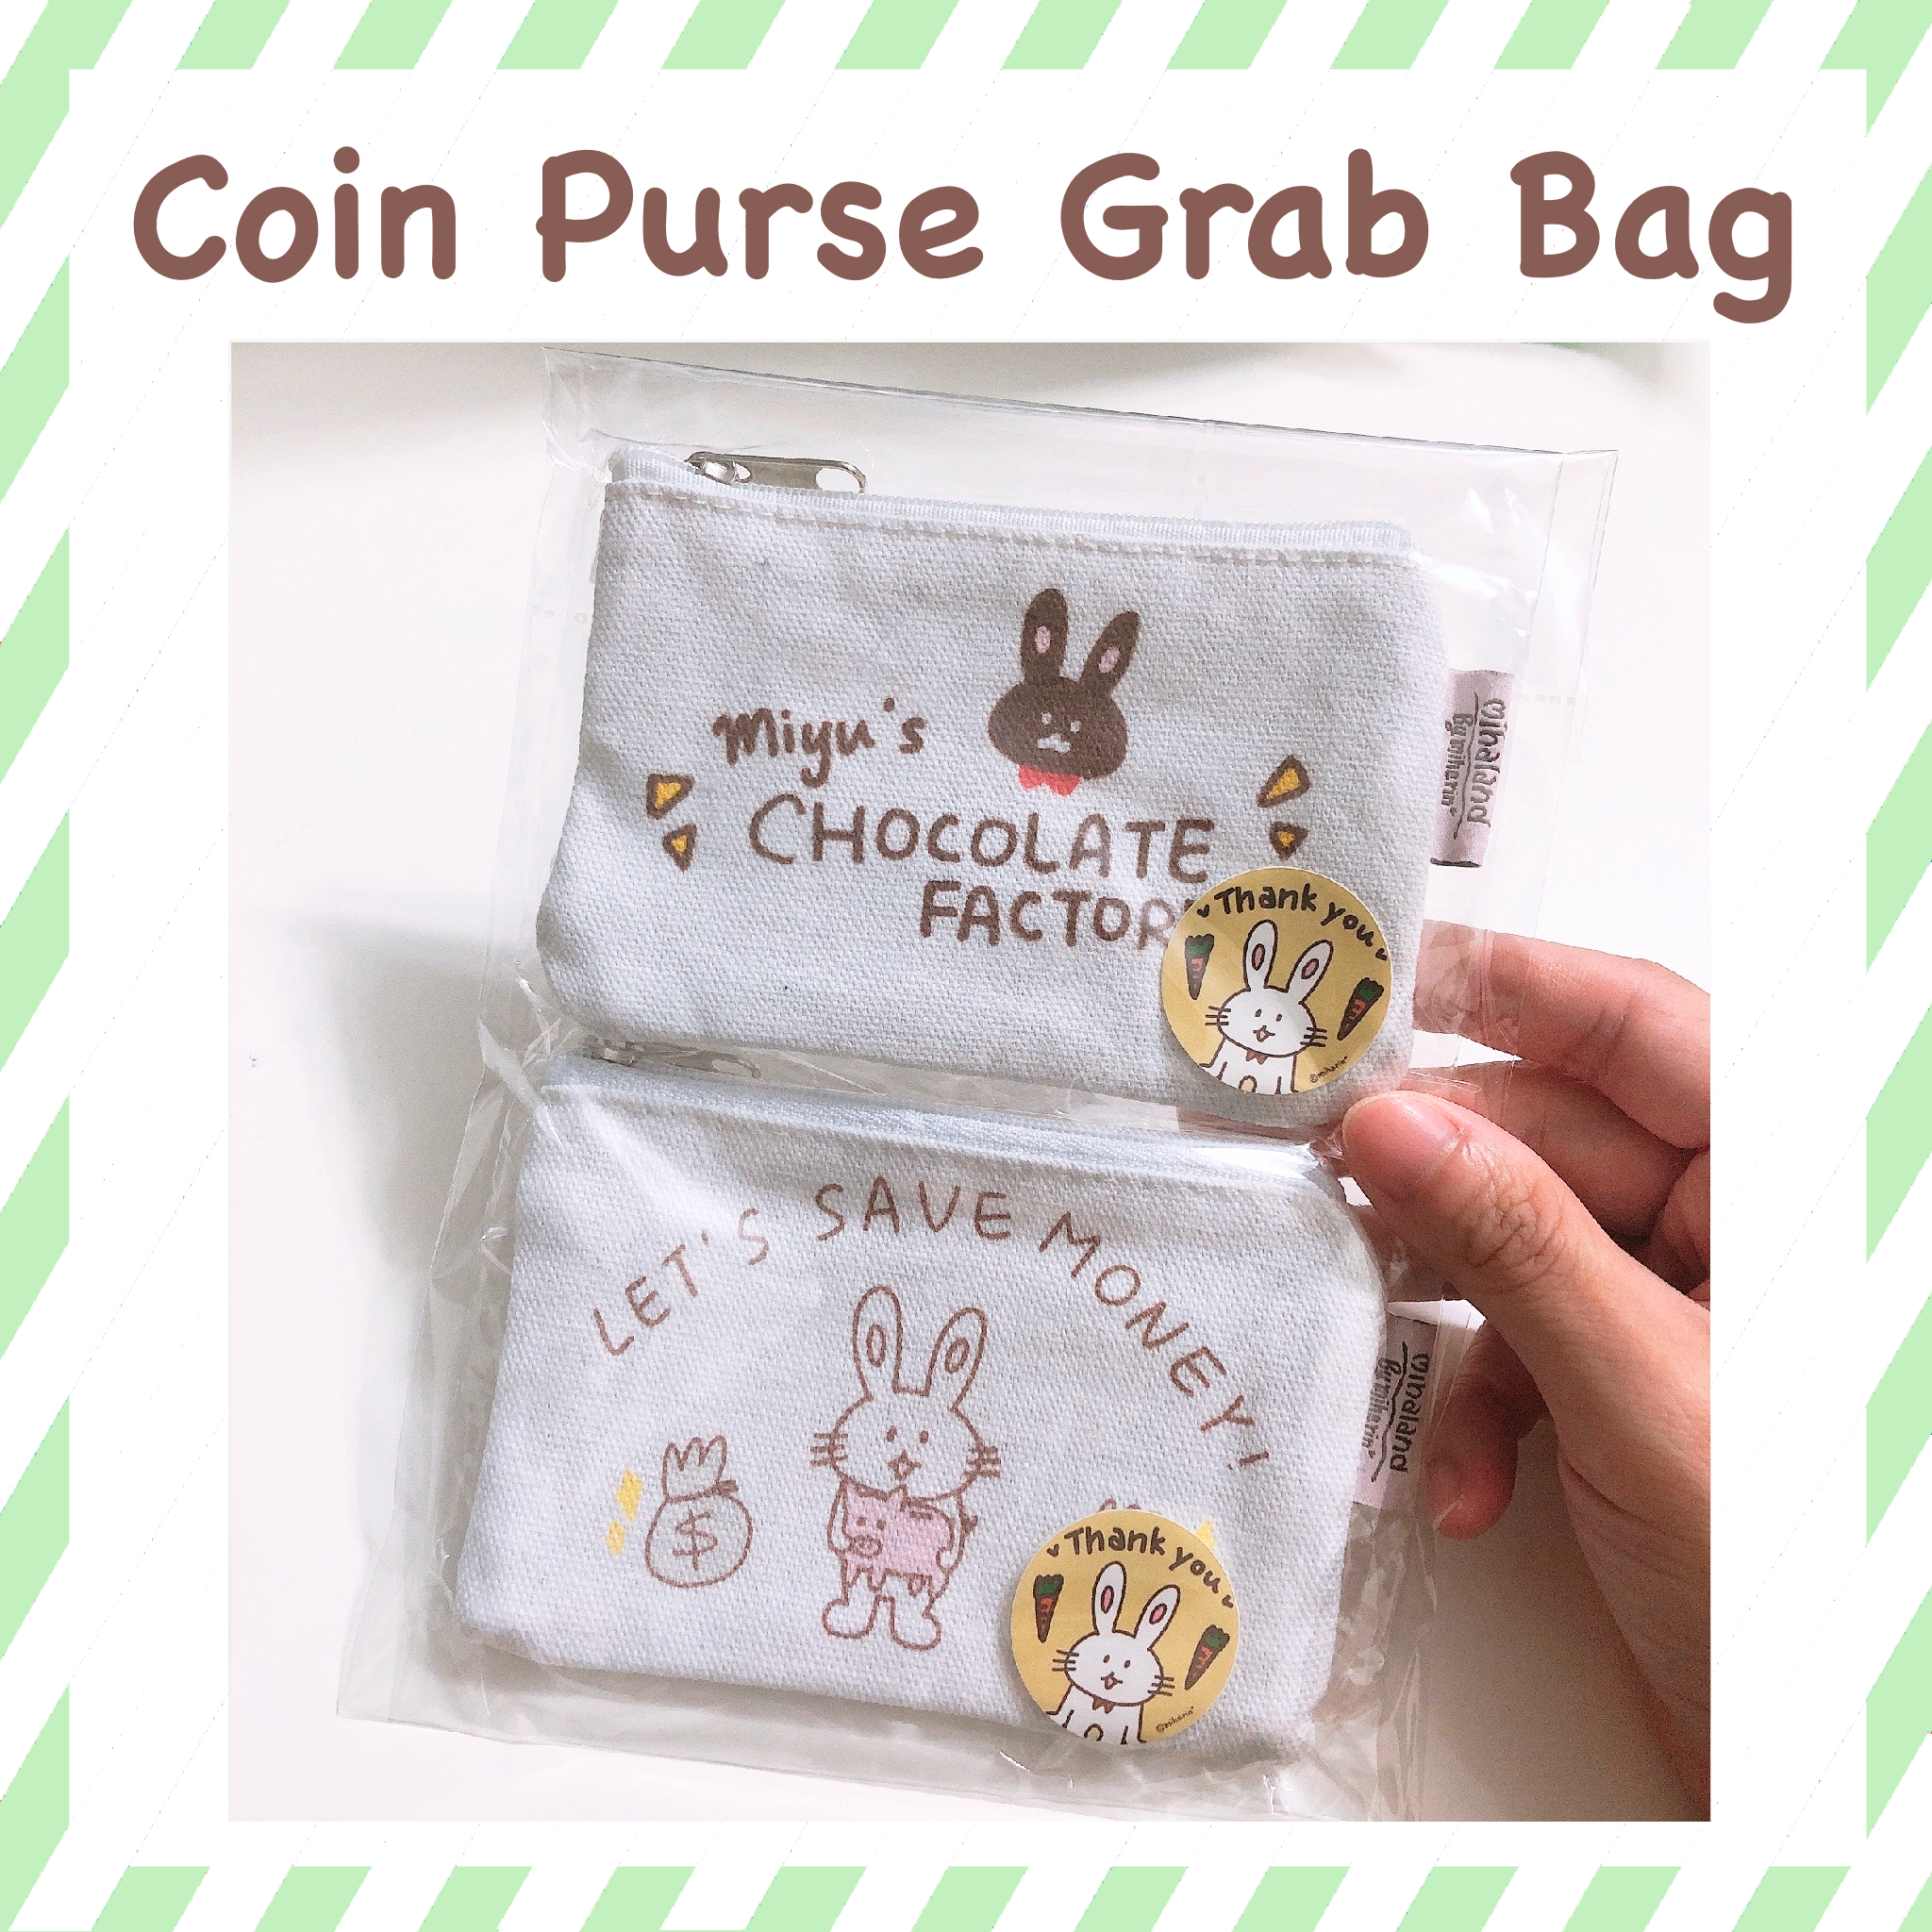 Coin Purse Grab Bag (CPGB)